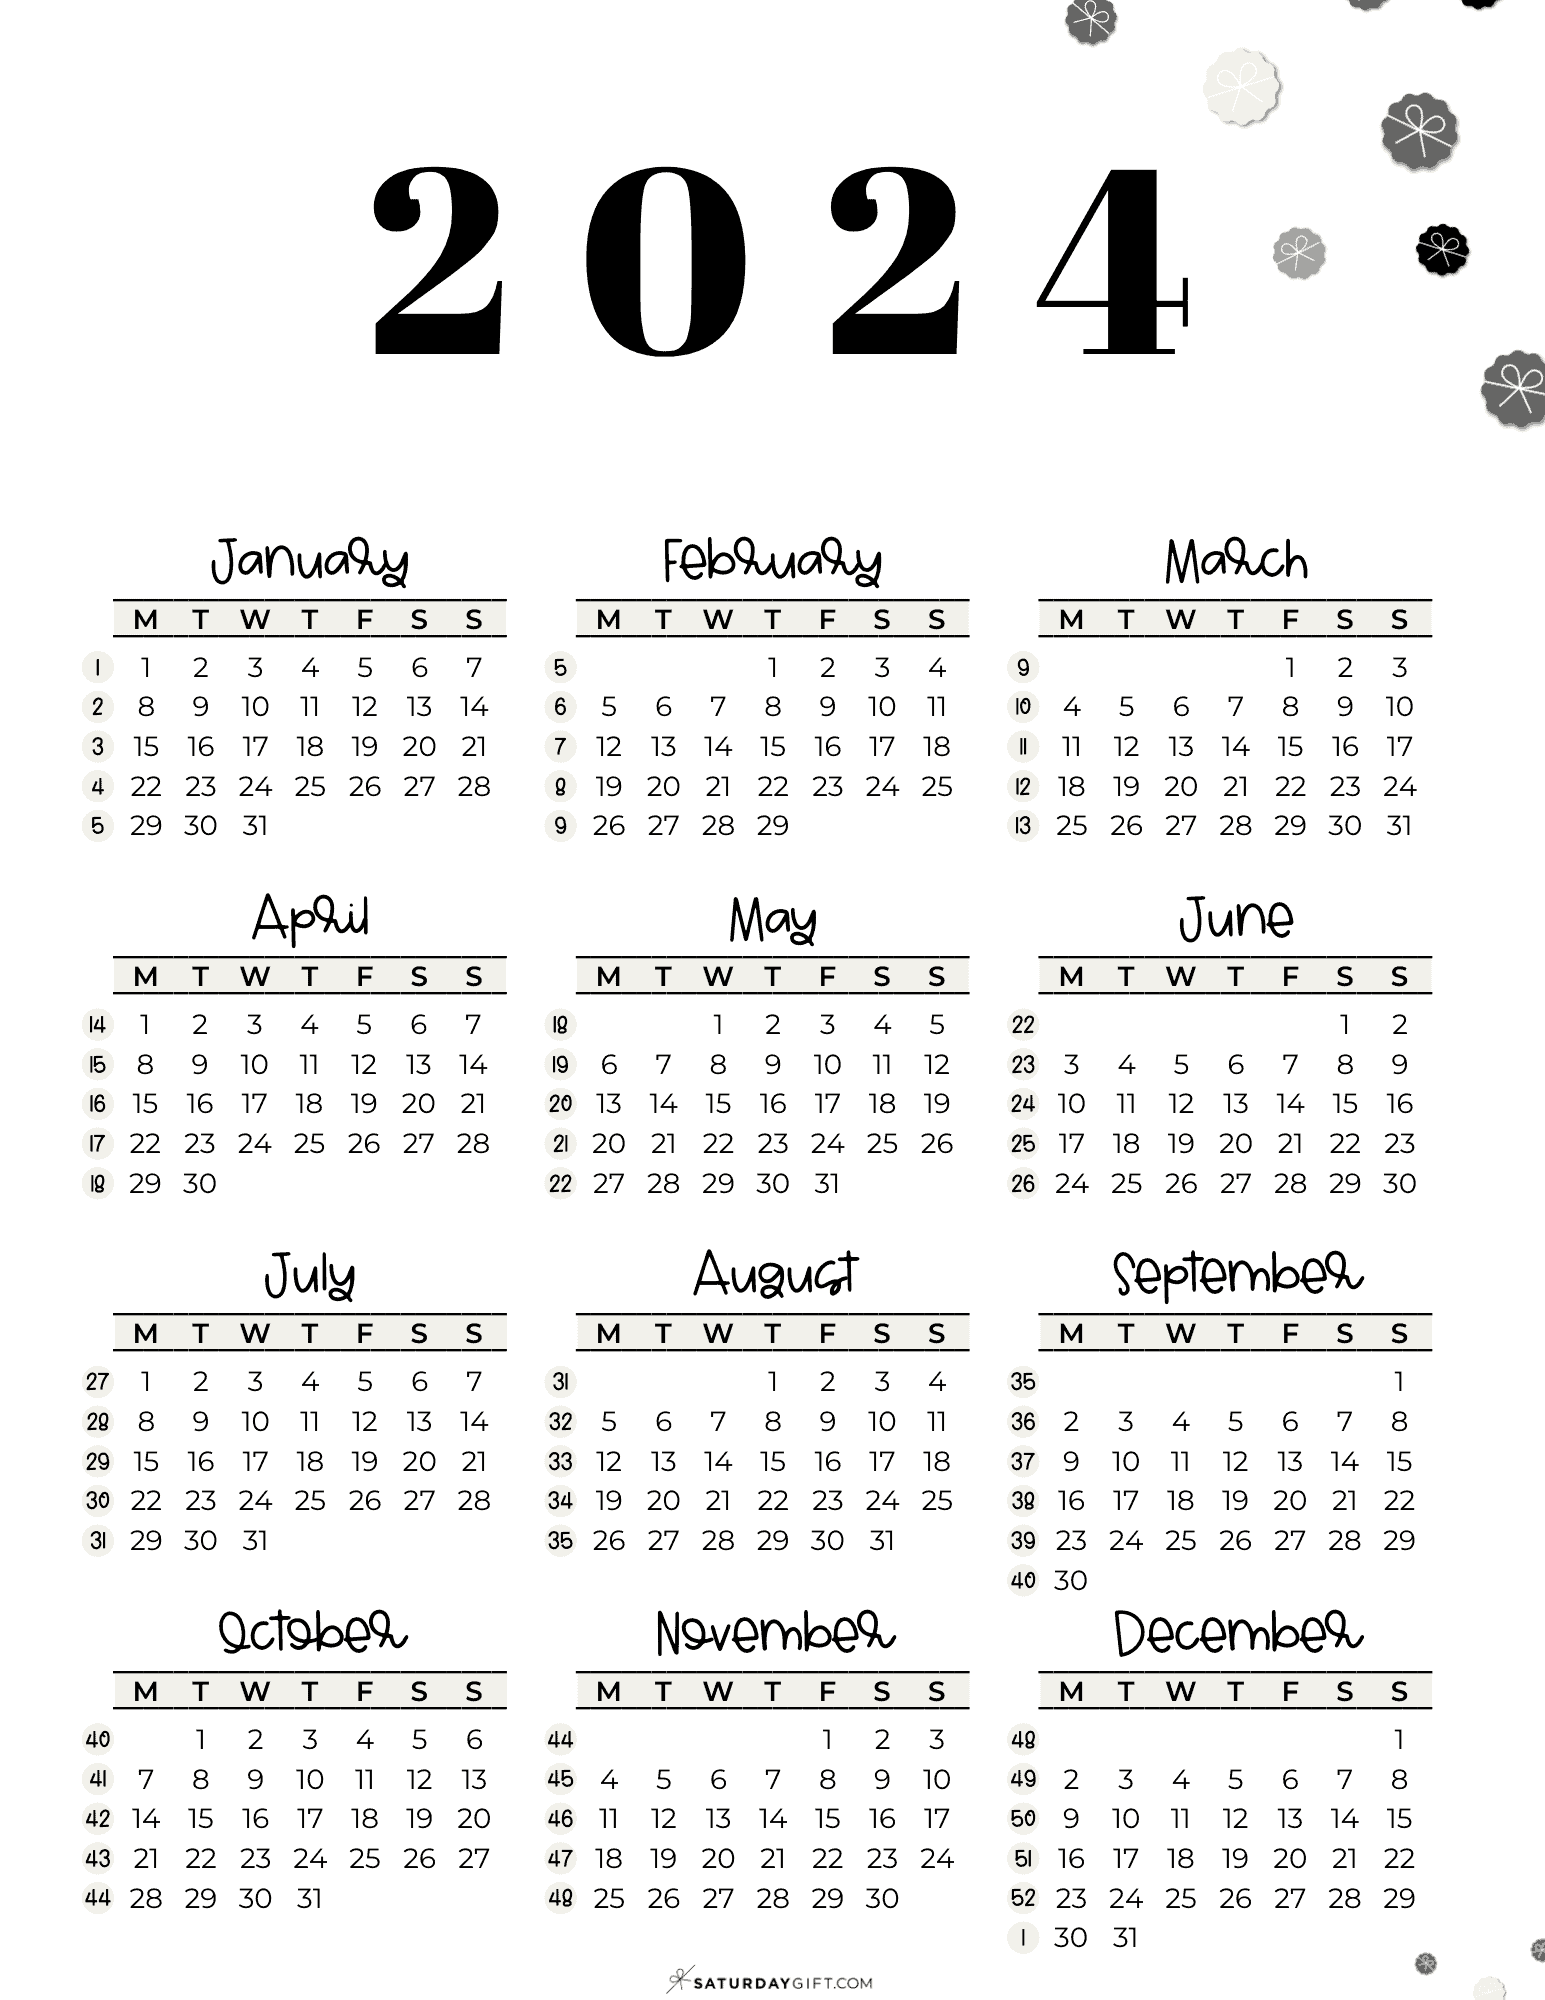 2024 Calendar Printable With Week Numbers List Dec 2024 Calendar - Free Printable 2024 Calendar With Week Numbers Printable